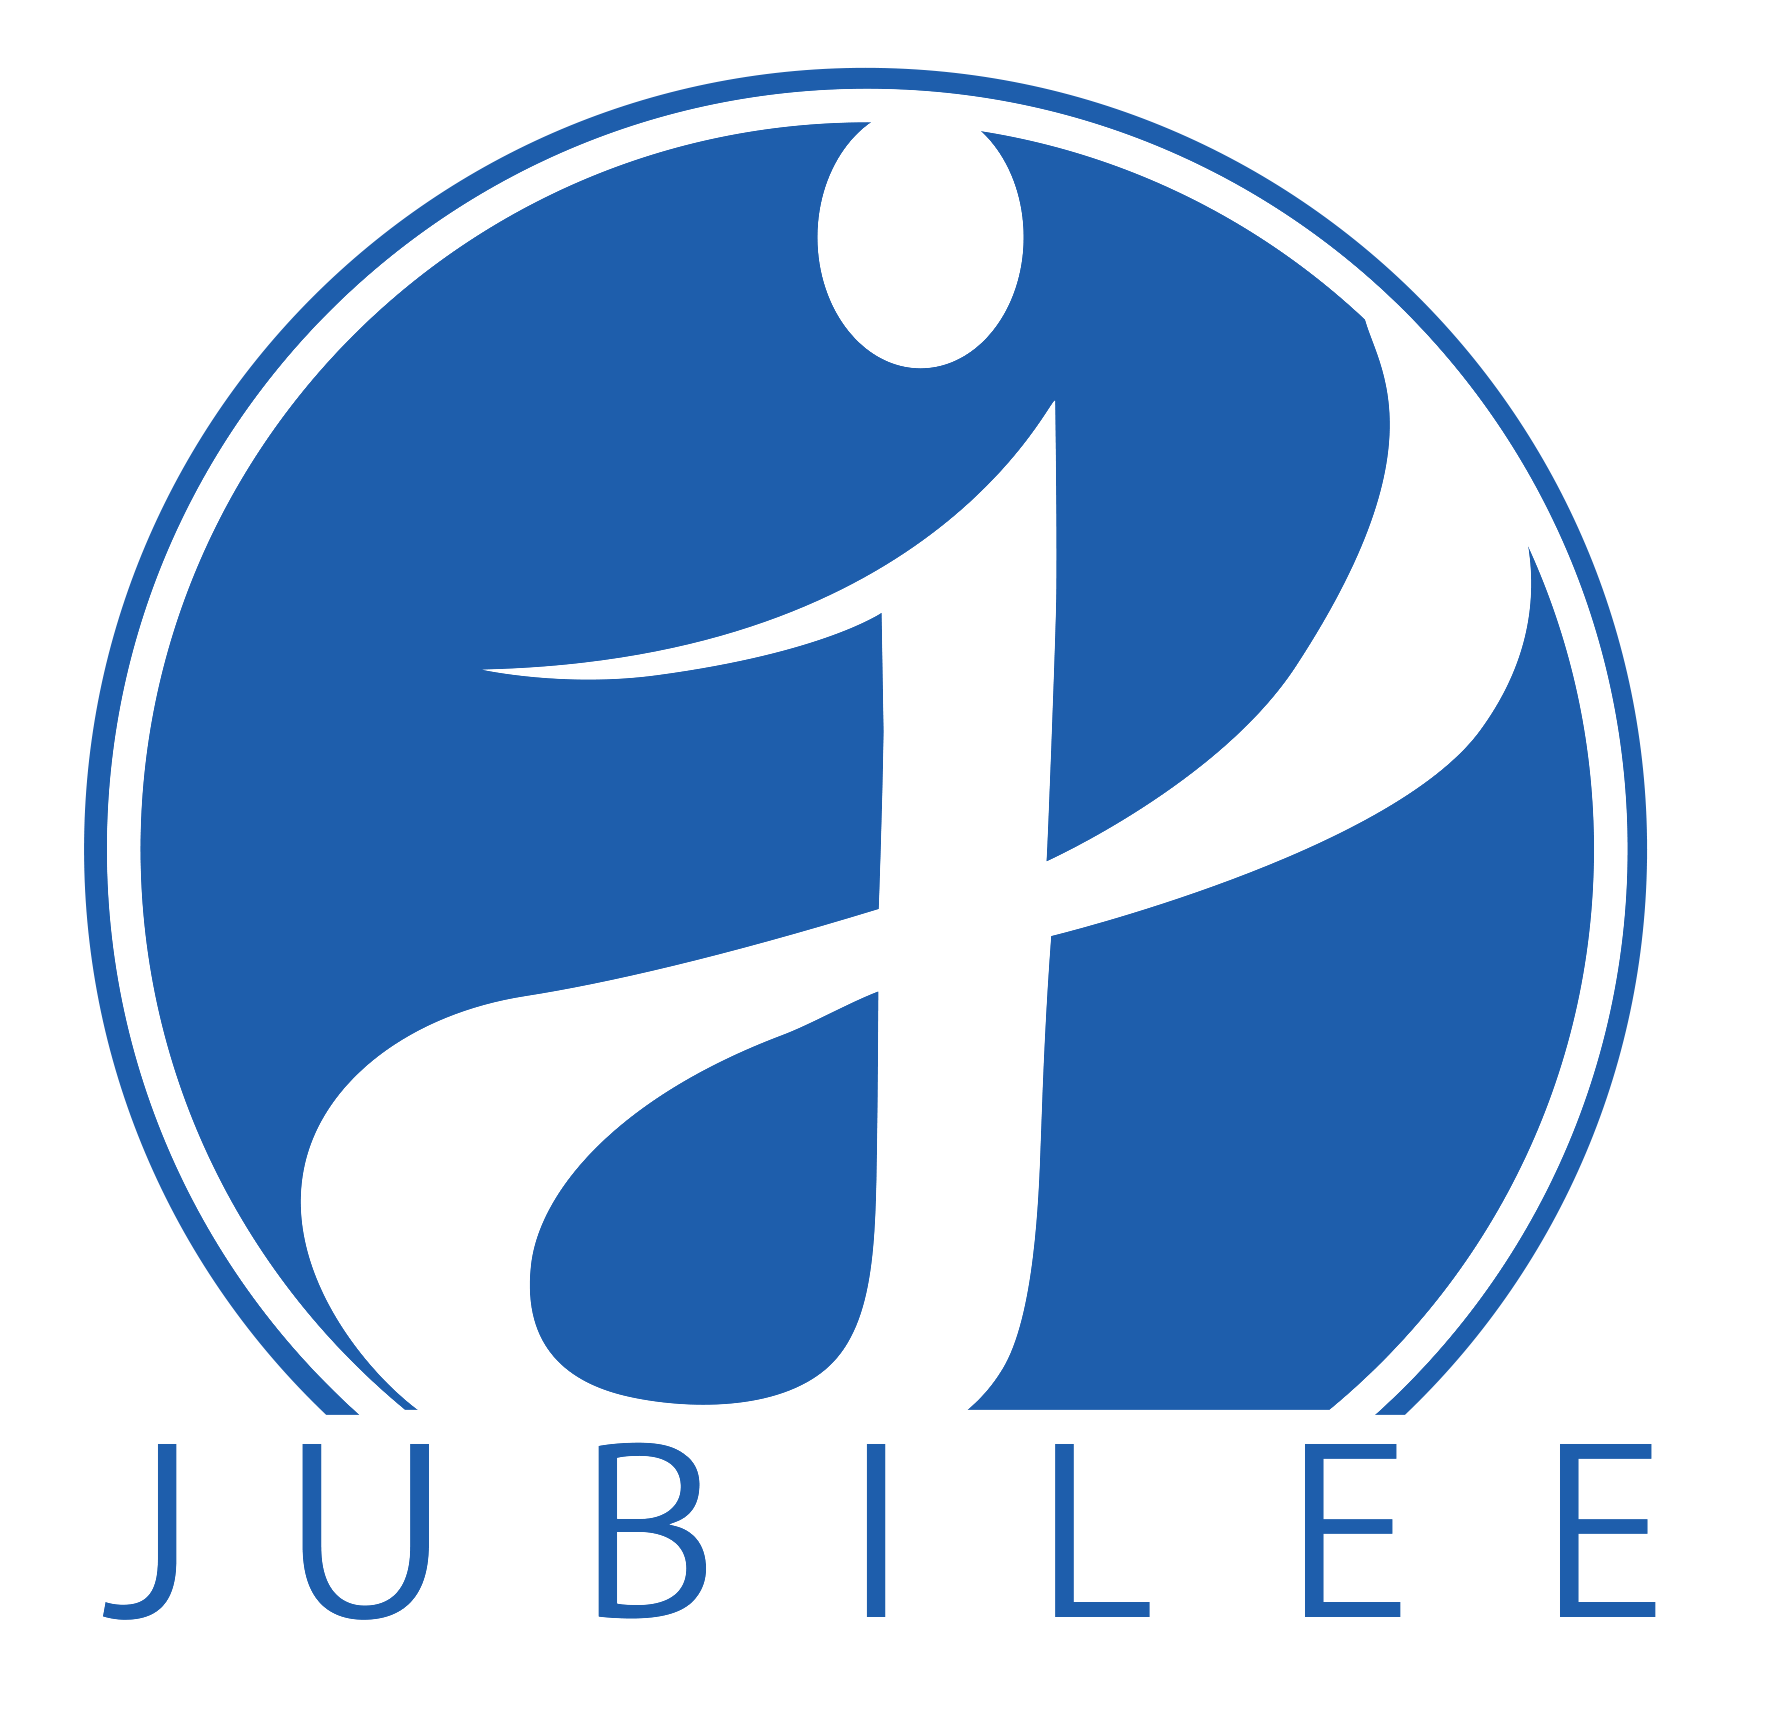 Jubilee Consortium